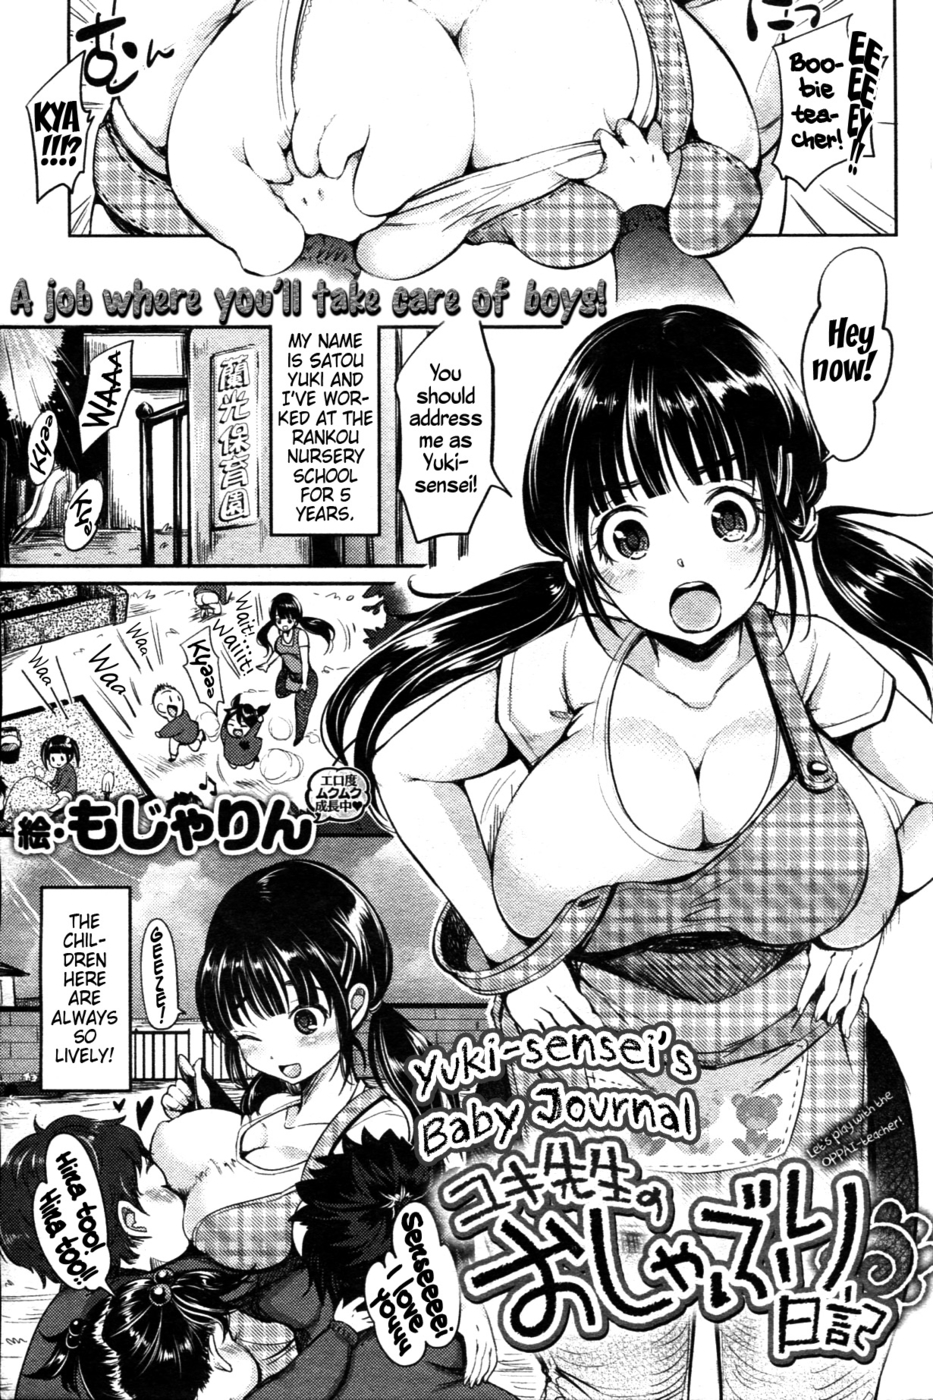 Hentai Manga Comic-Yuki-Sensei's Baby Journal-Read-1